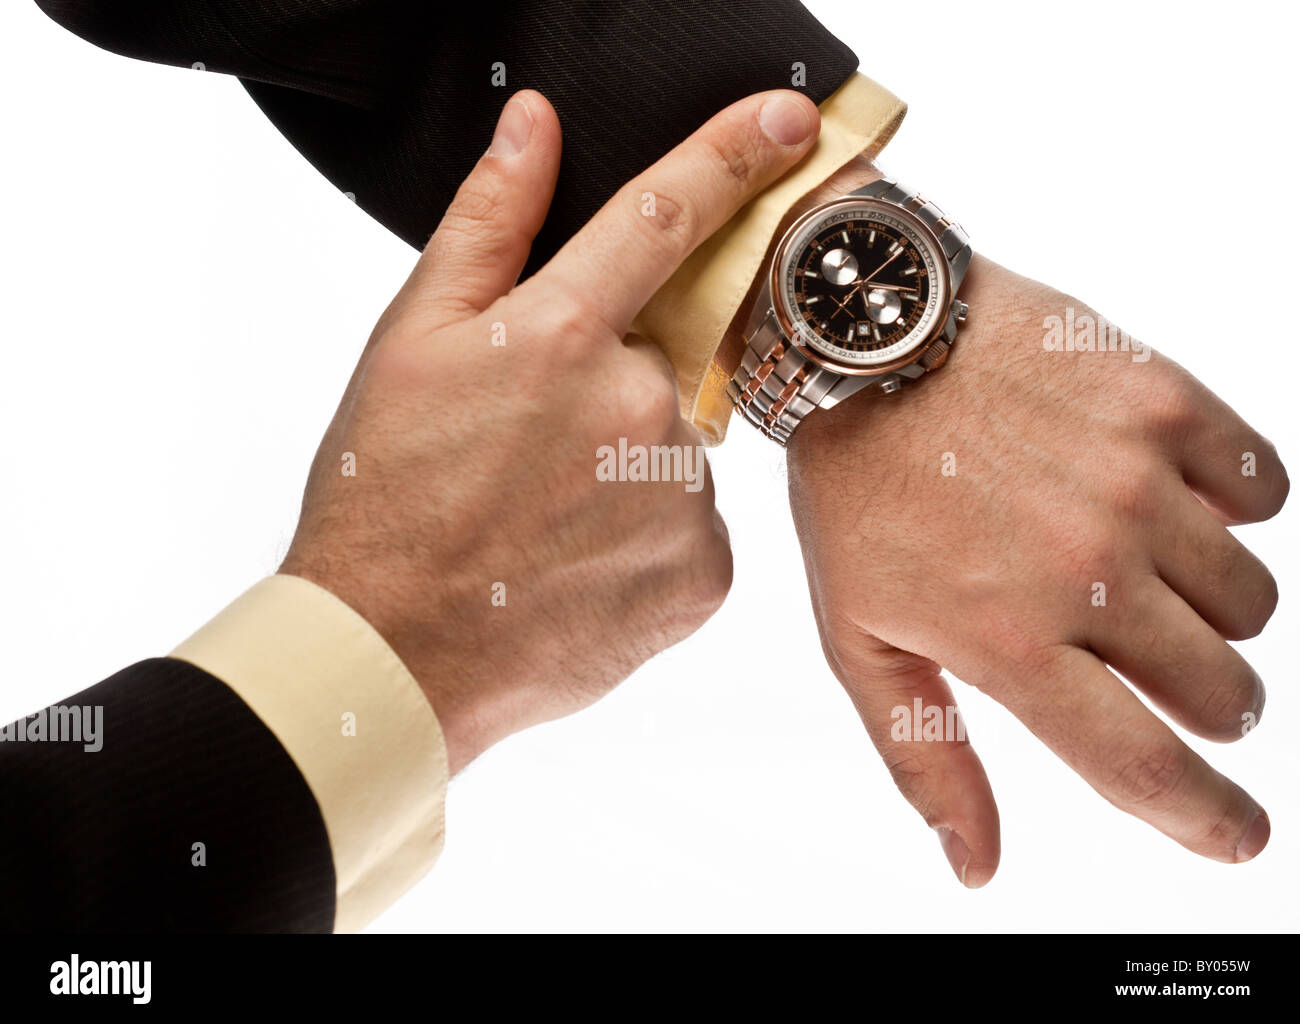 Die Hand des Mannes in der Klage verweist auf seine Uhr Stockfoto